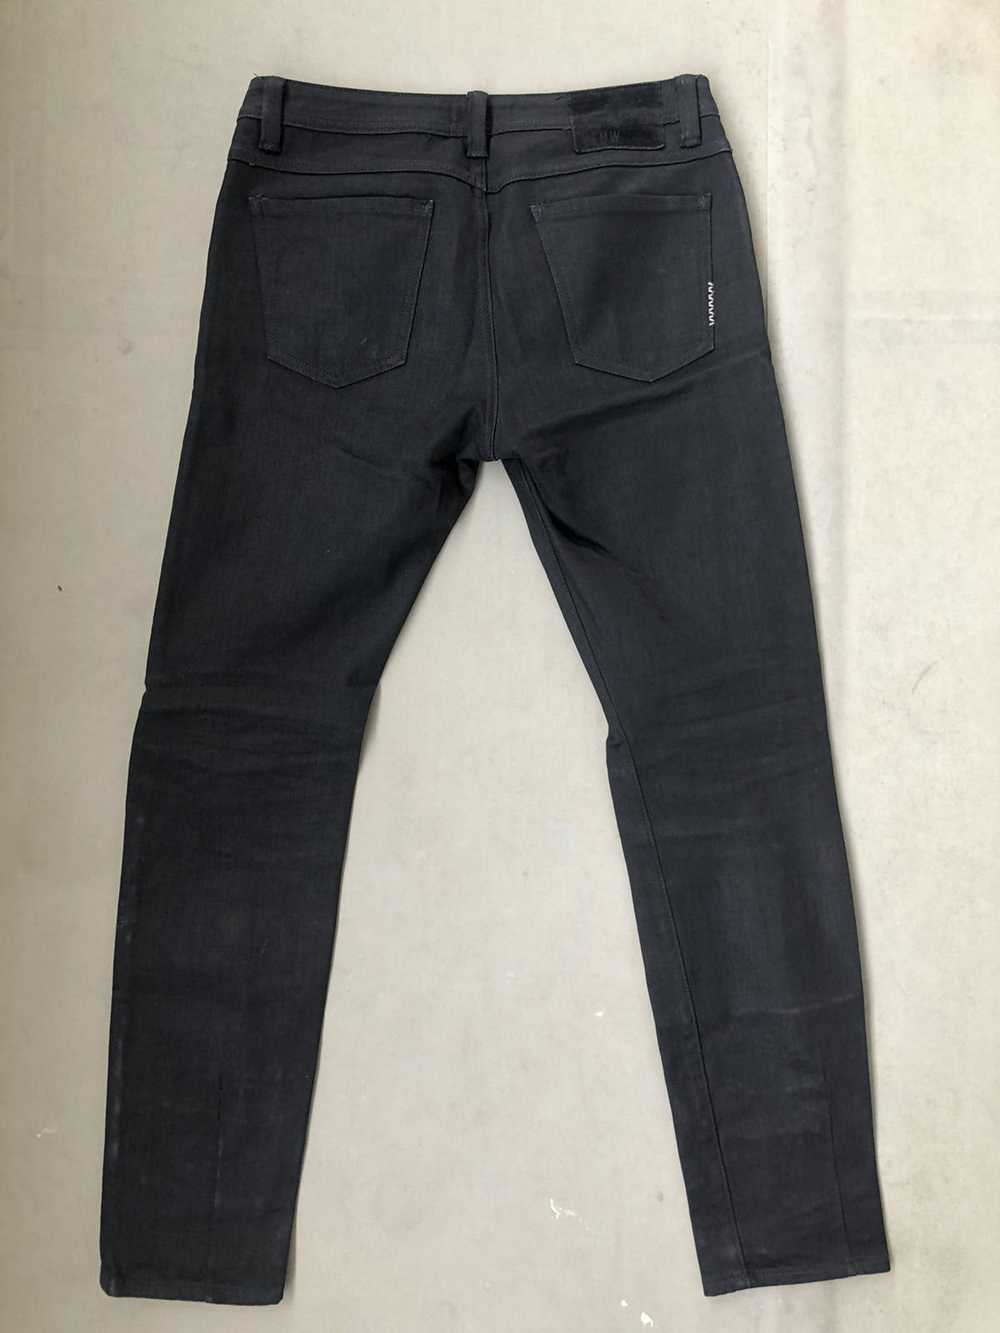 Neuw denim Iggy skinny black jeans - image 2